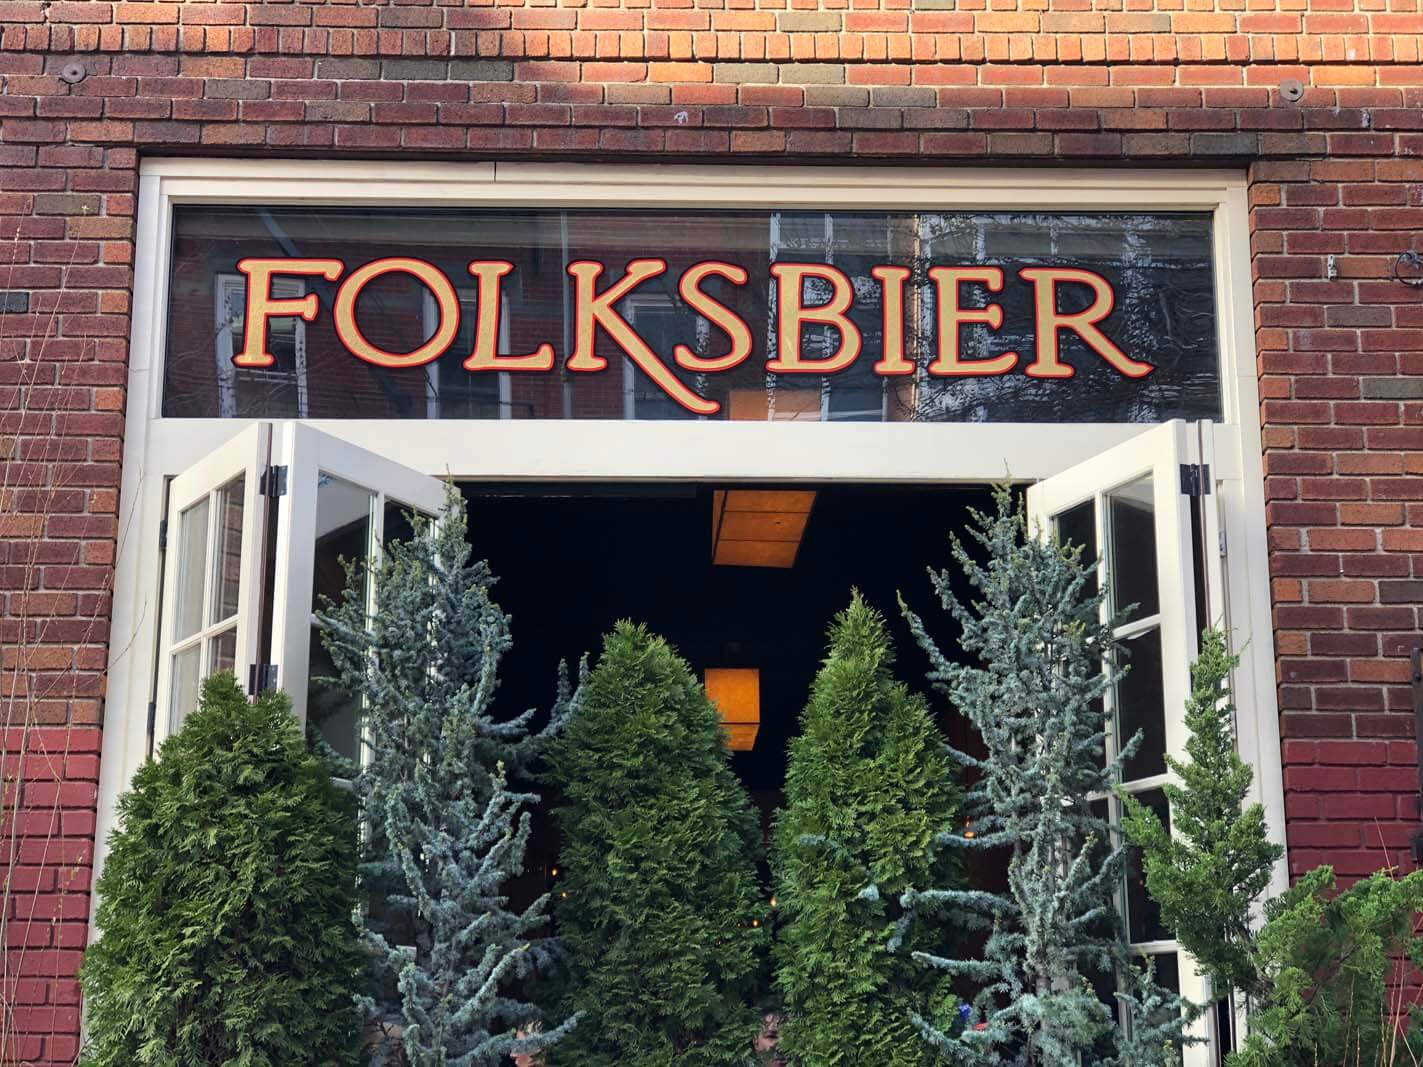 Folksbier on Luquer Street in Carroll Gardens in Brooklyn brewery